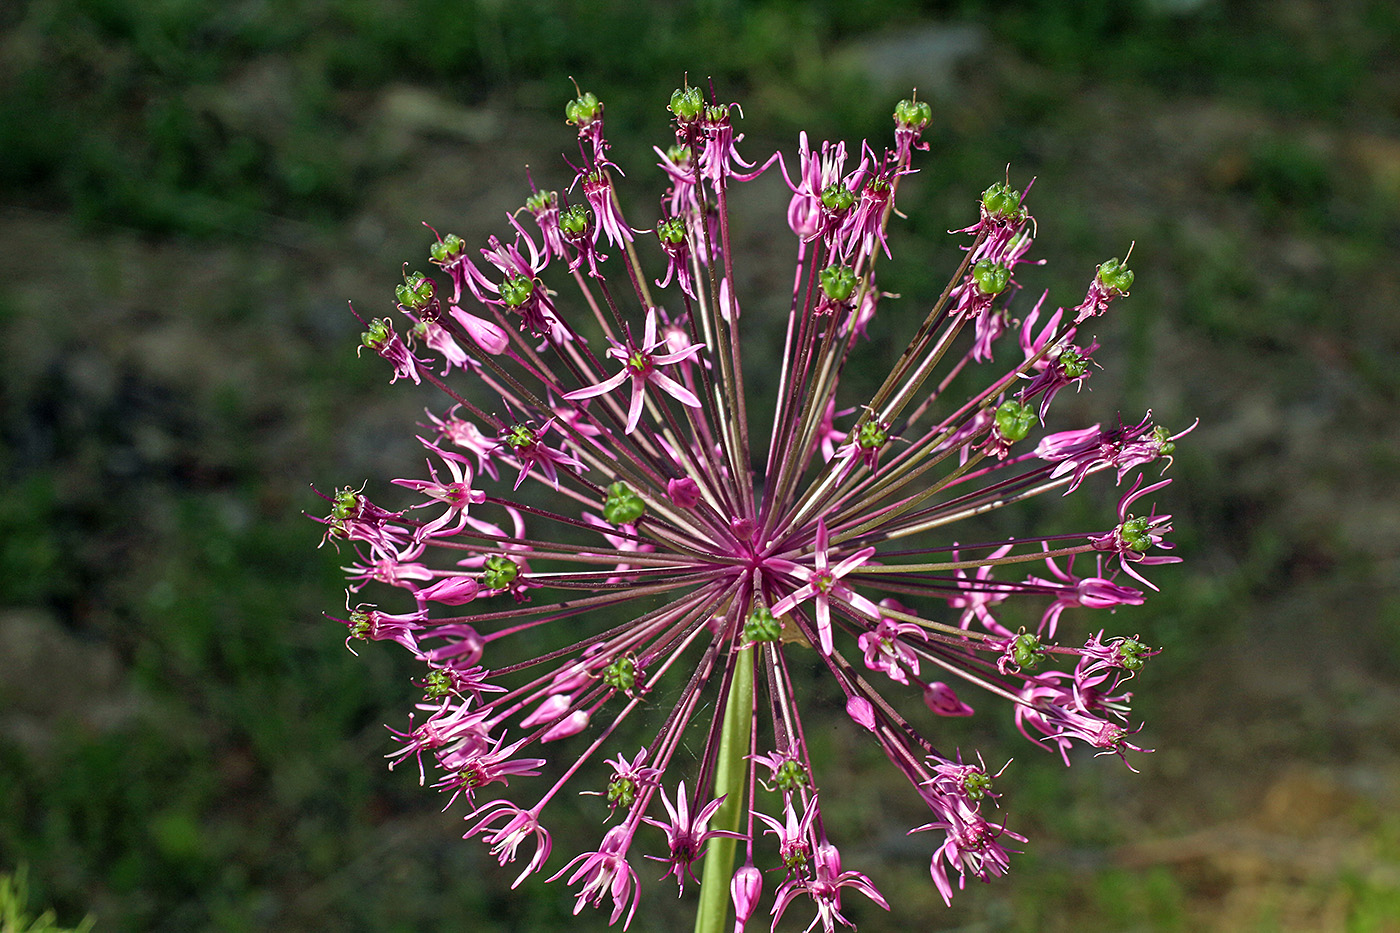 Image of Allium sarawschanicum specimen.